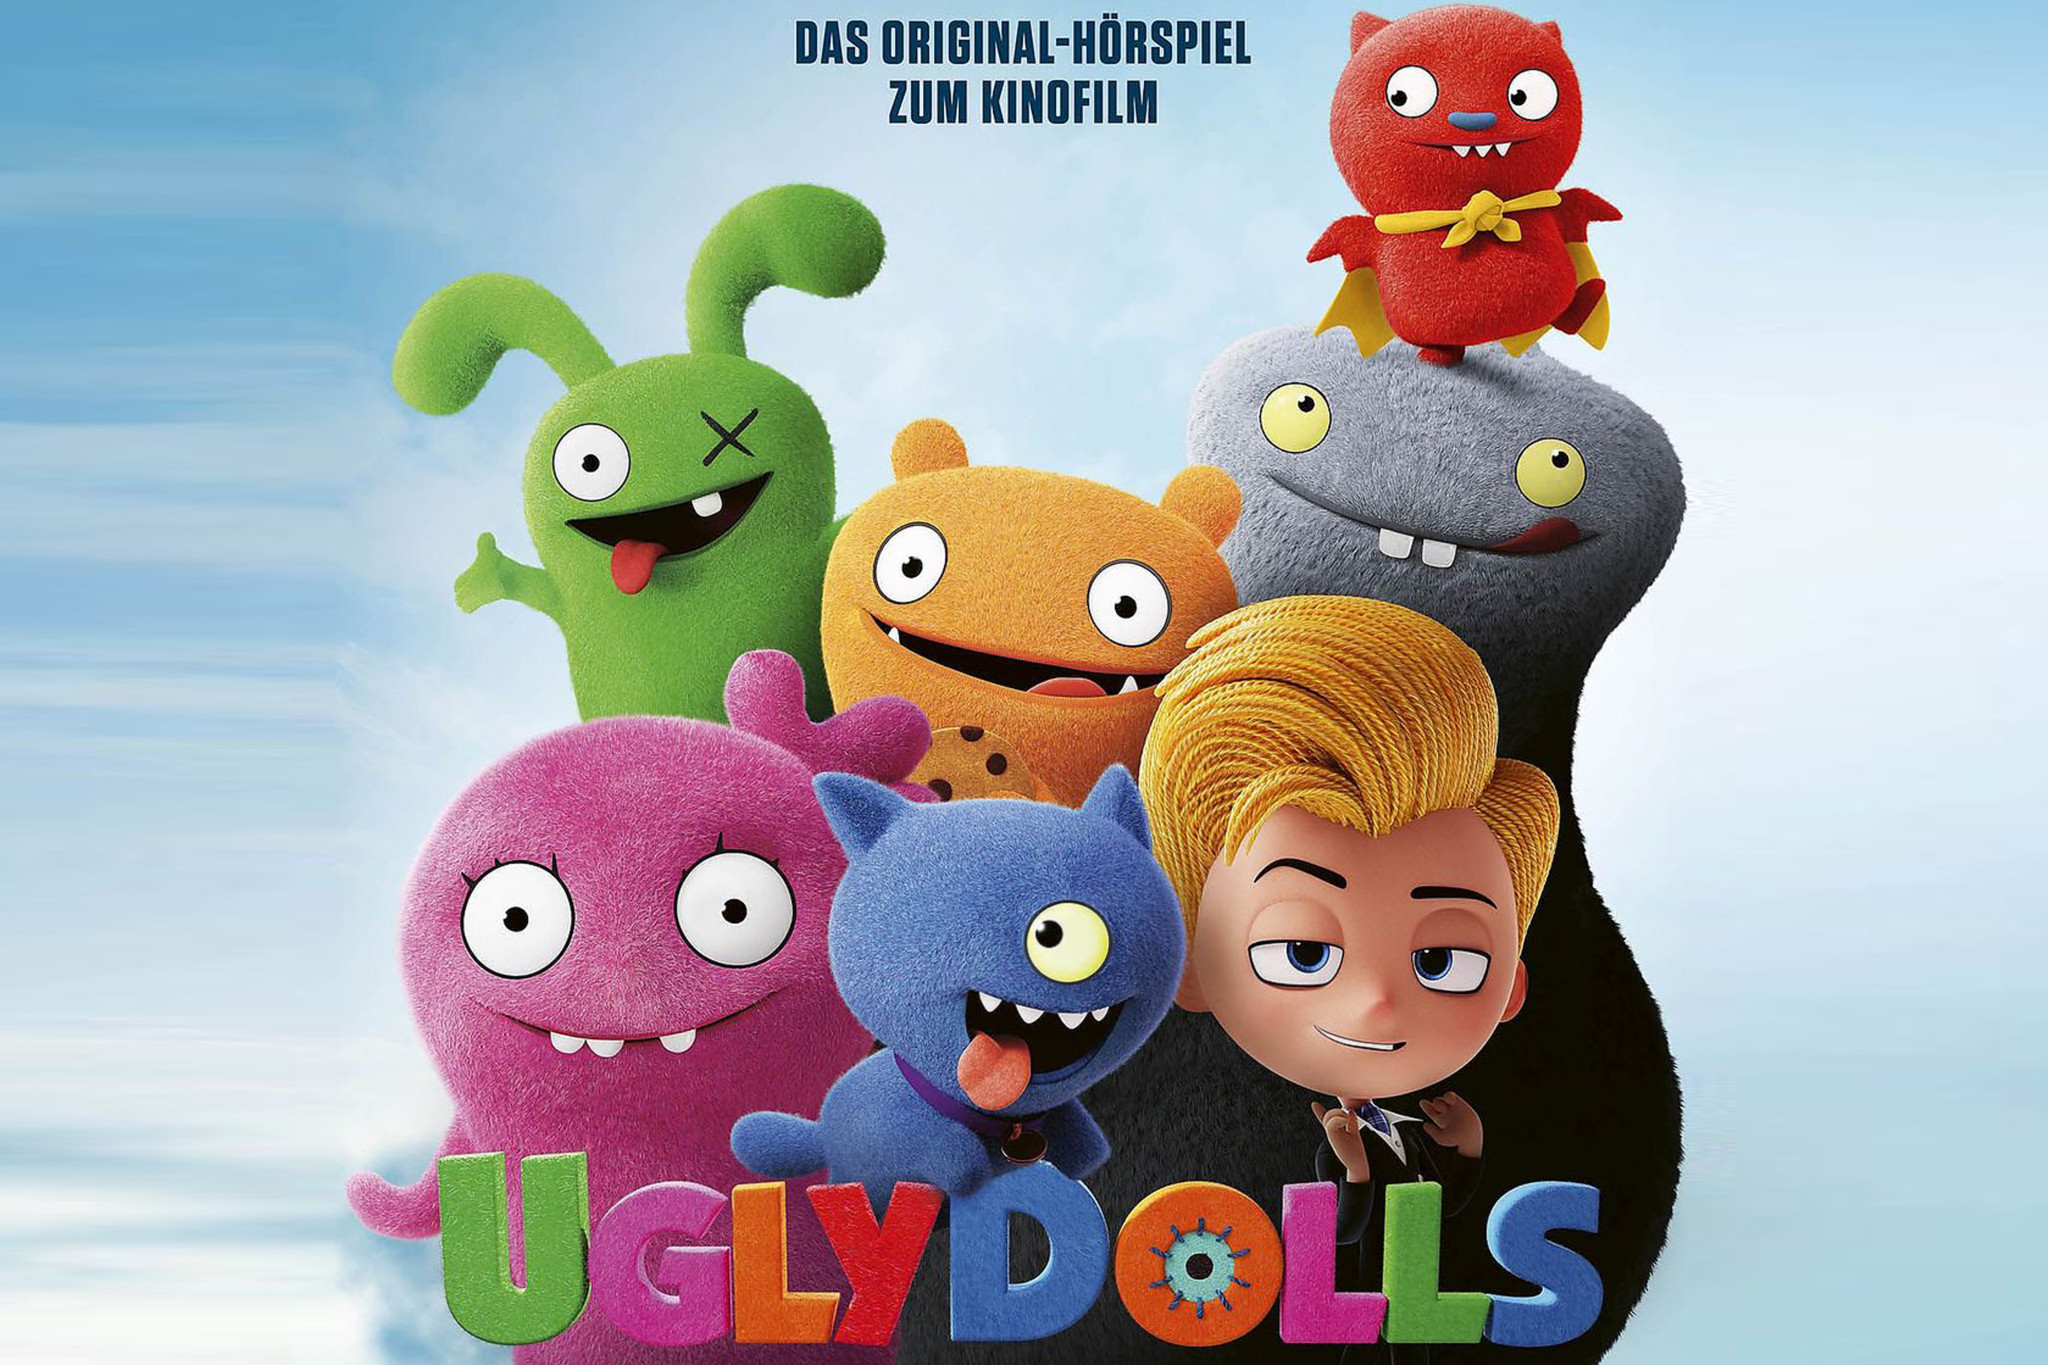 Aus dem Kino – auf die Ohren: Das Original-Hörspiel zum Kinofilm "UglyDolls"